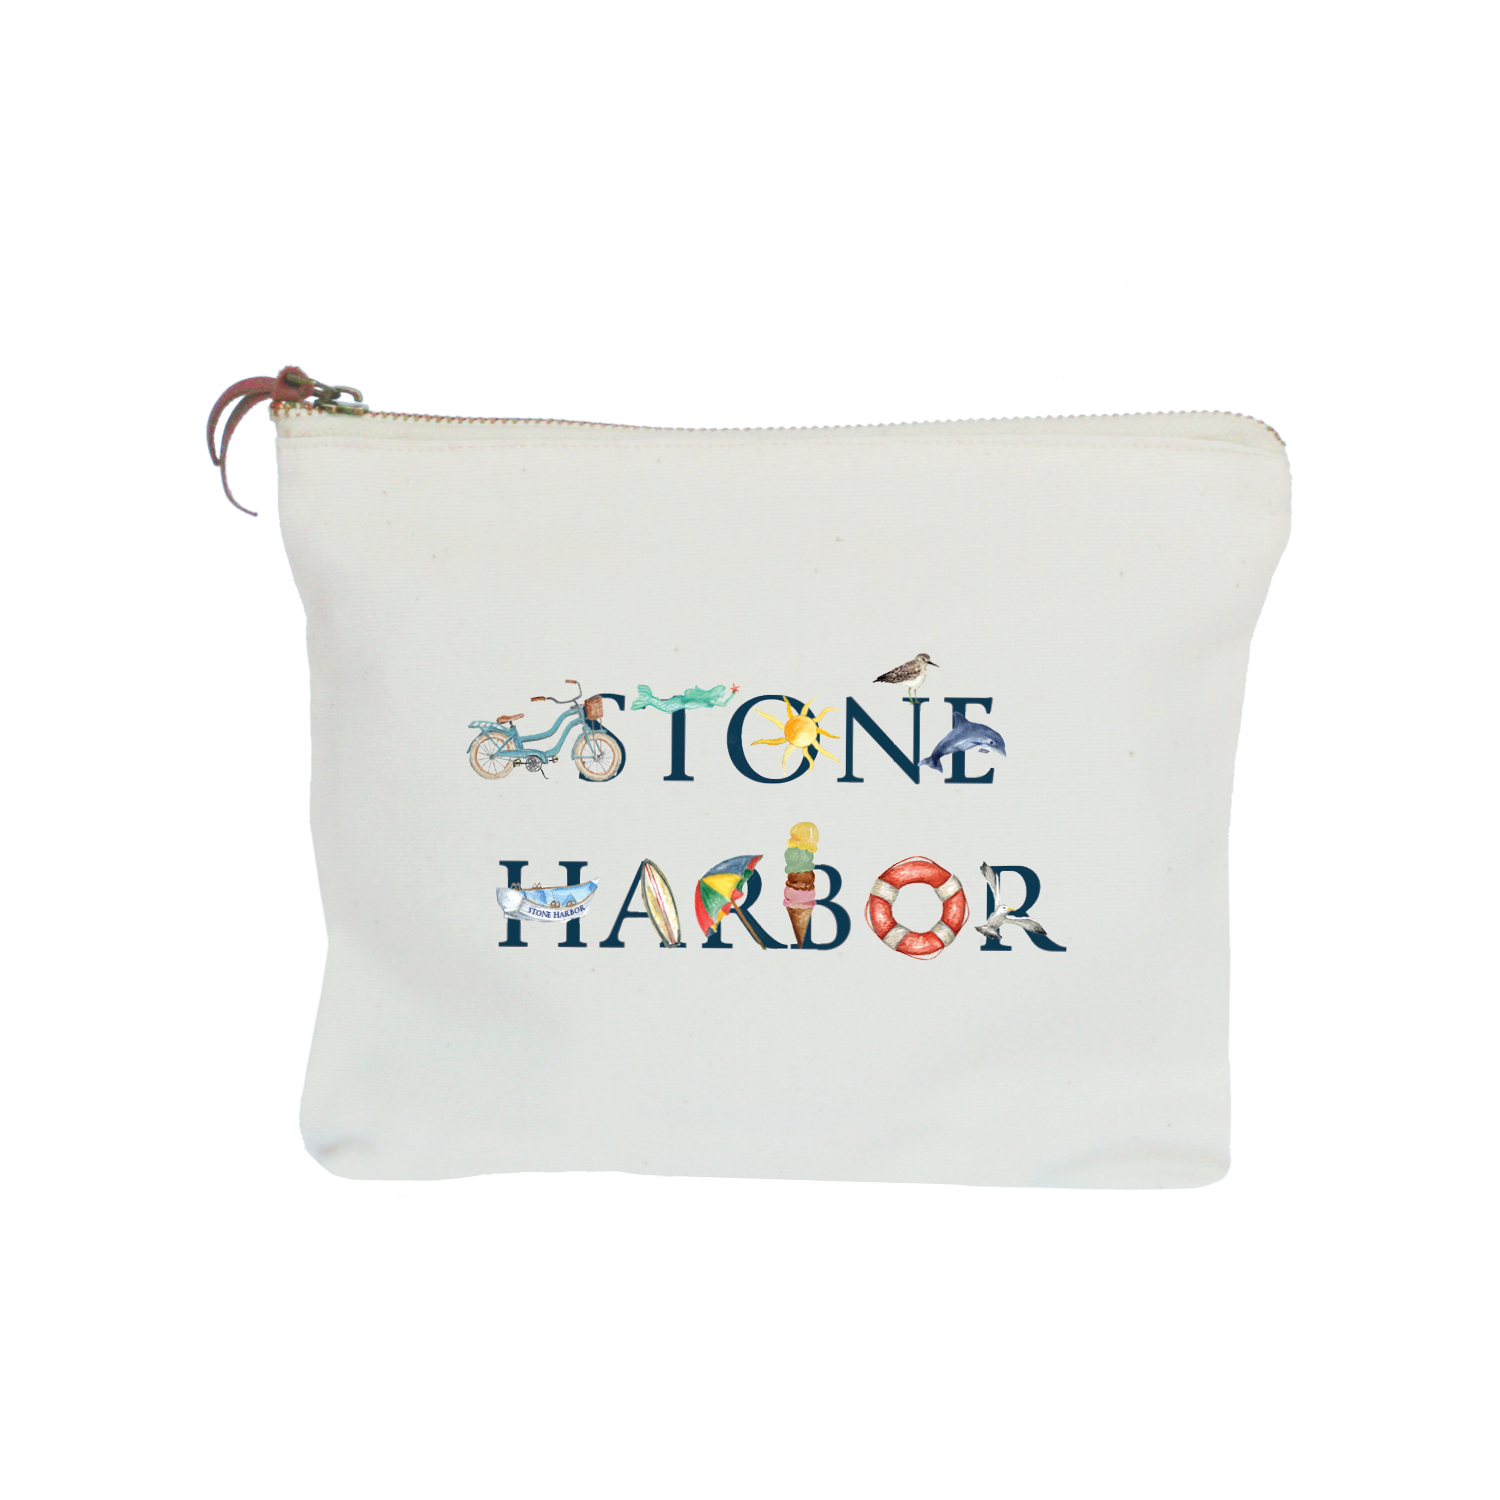 stone harbor zipper pouch